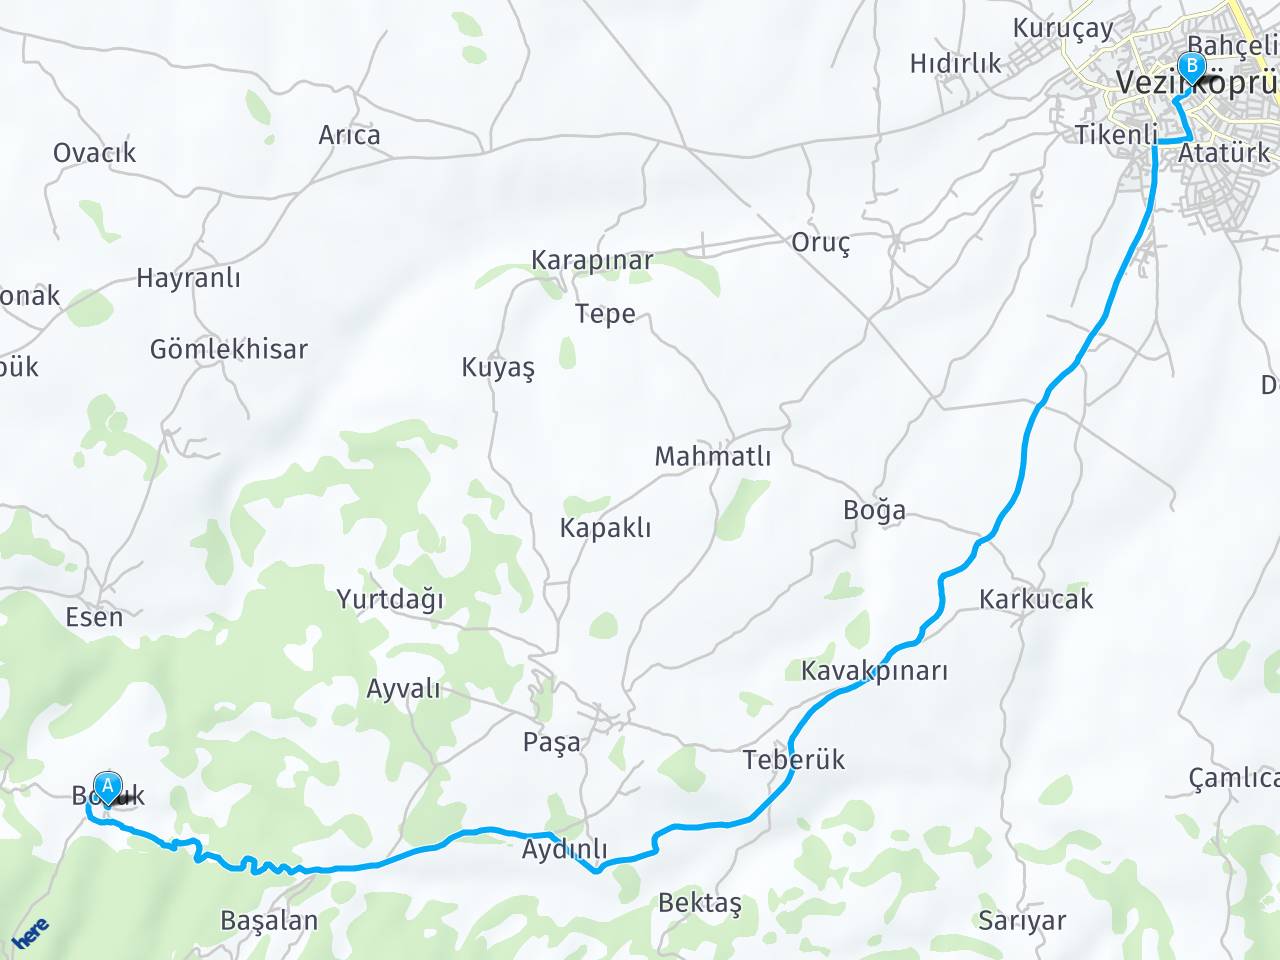 Vezirkopru Borukköy Vezirköprü haritası